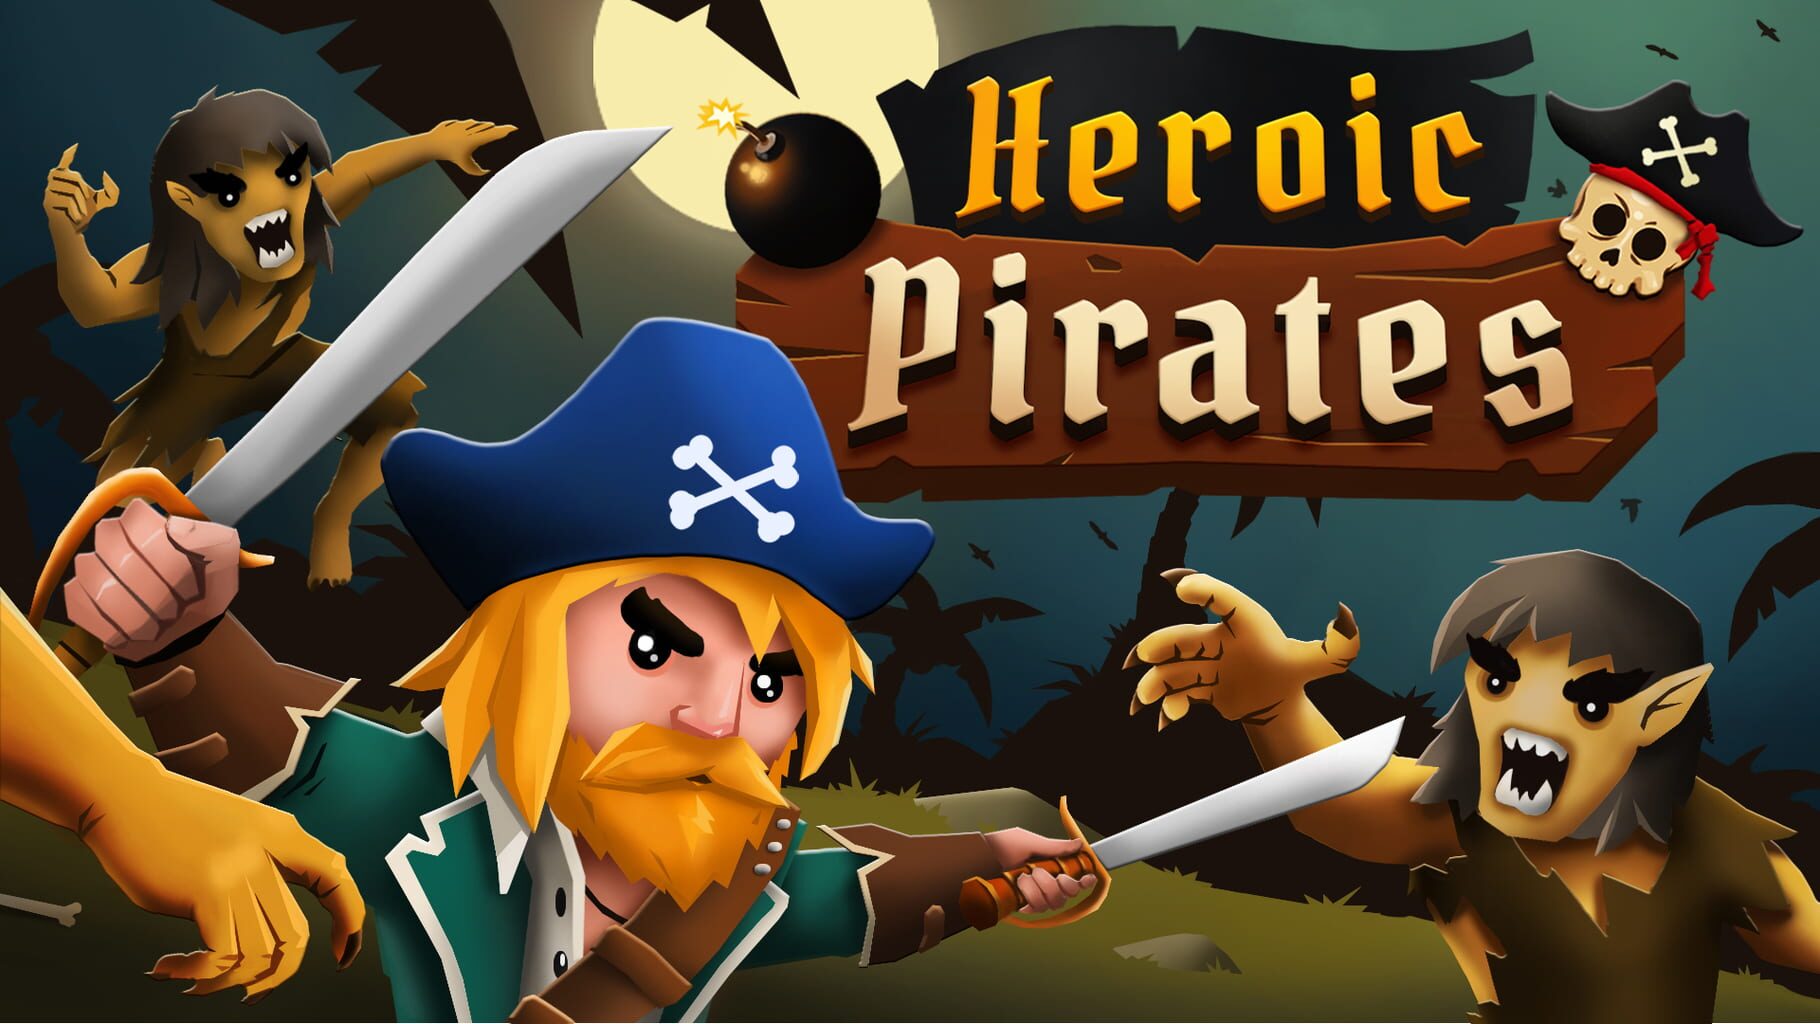 Heroic Pirates artwork